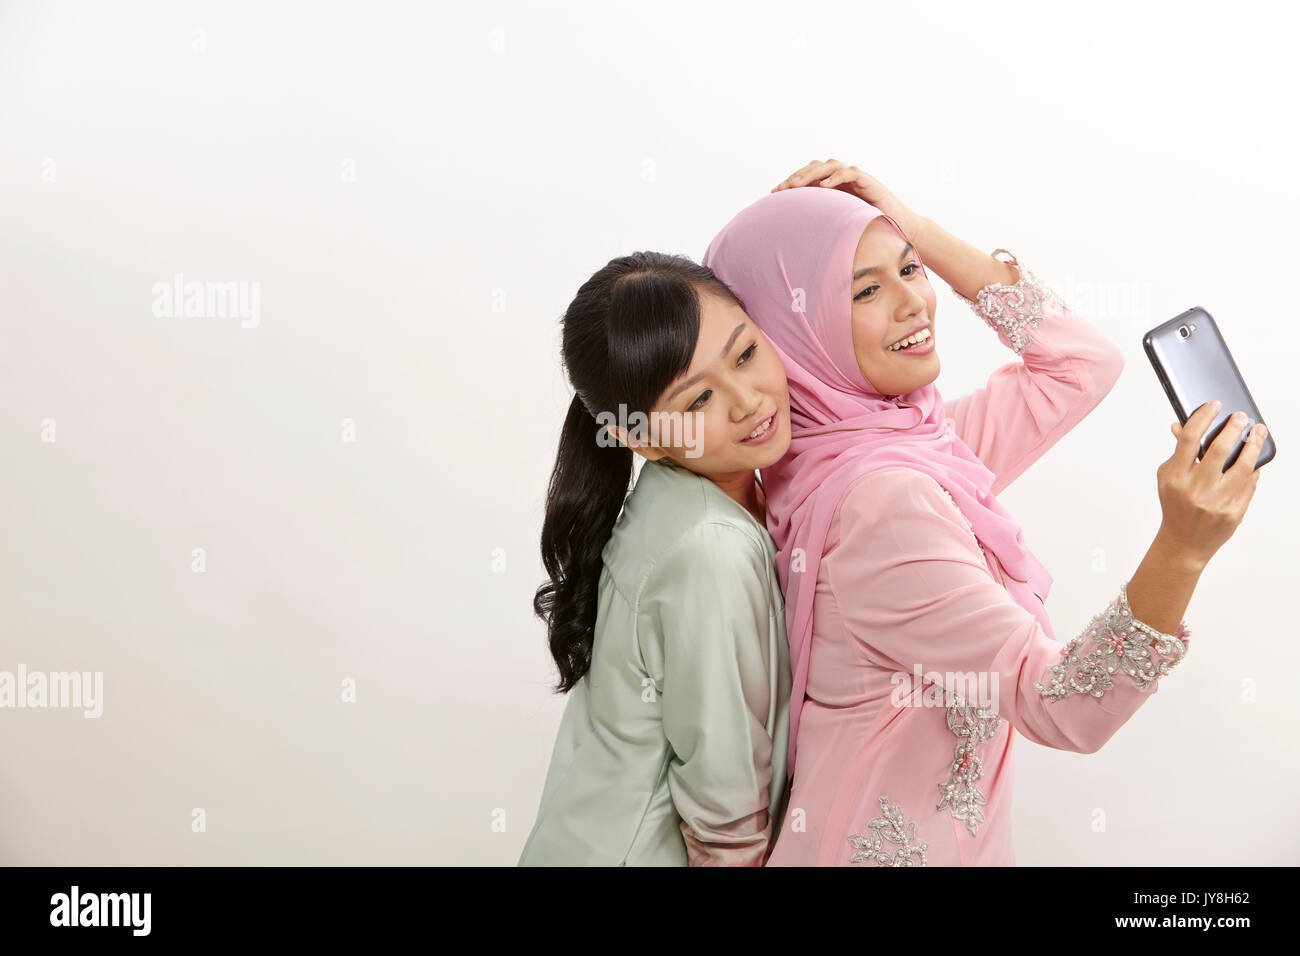 Zwei glückliche junge muslimische Frau, Selbstportrait mit Handphone Stockfoto